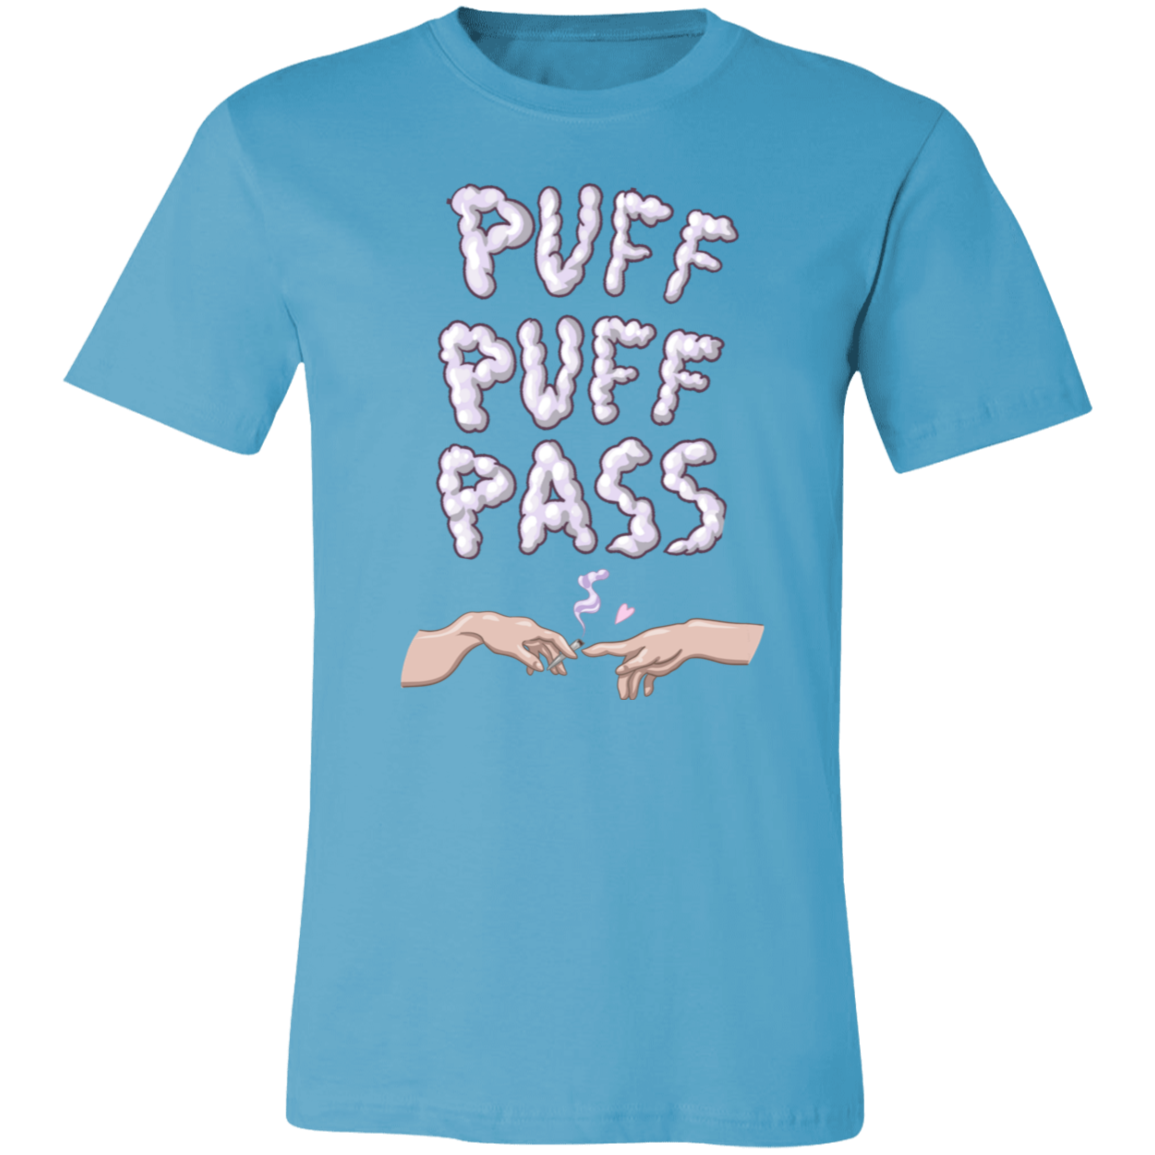 Puff Puff Pass Shirt